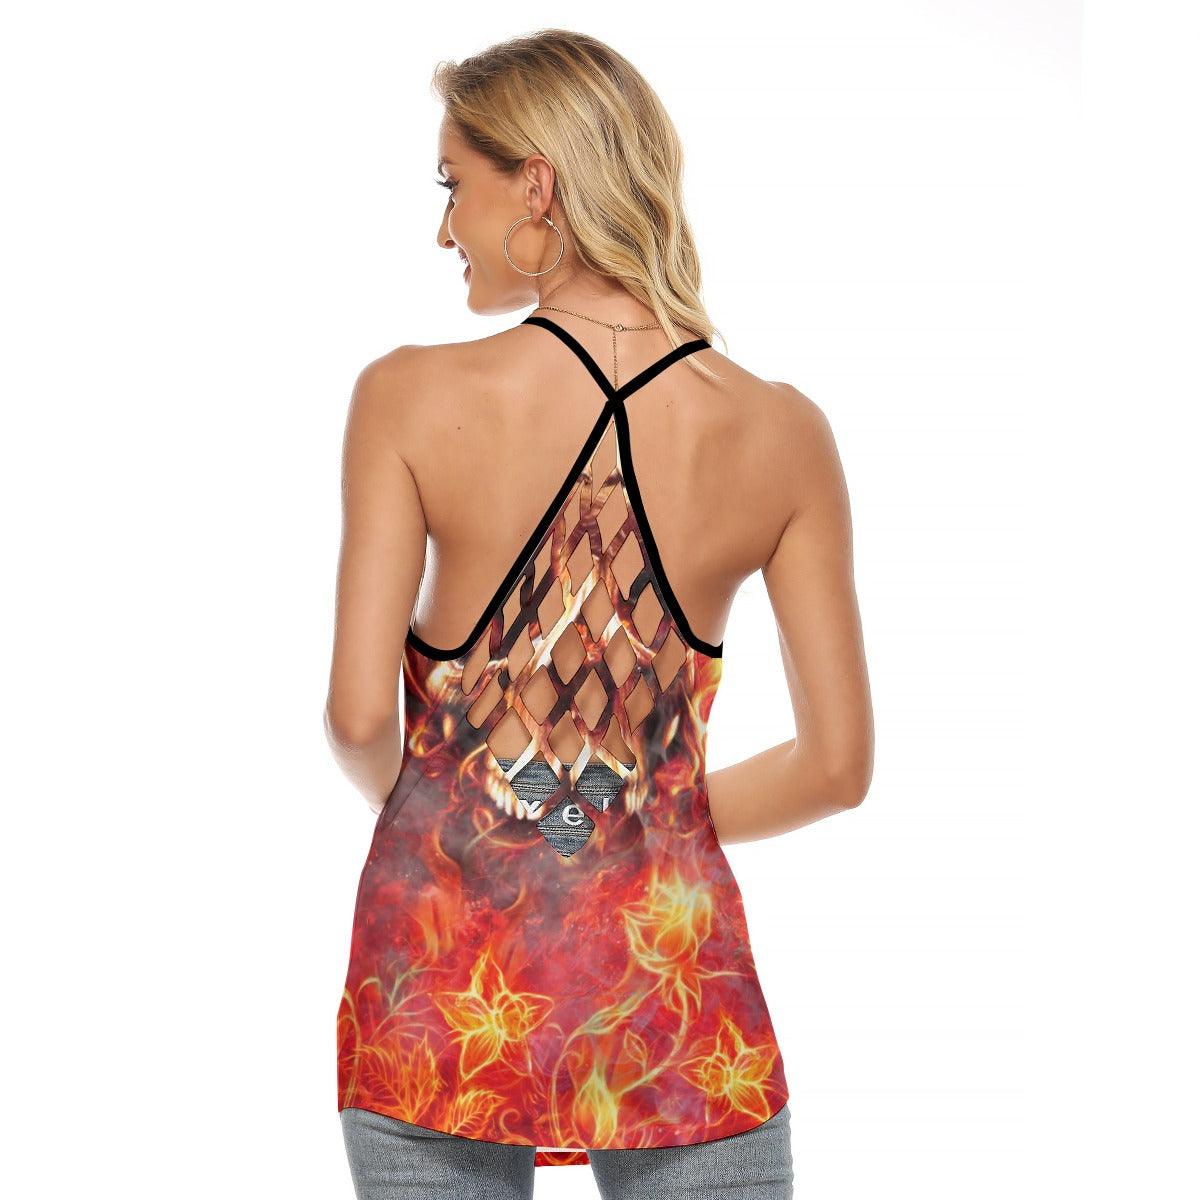 Fire Hell Skull Artwork Criss-Cross Open Back Tank Top, Trending T-Shirt For Women - Wonder Skull